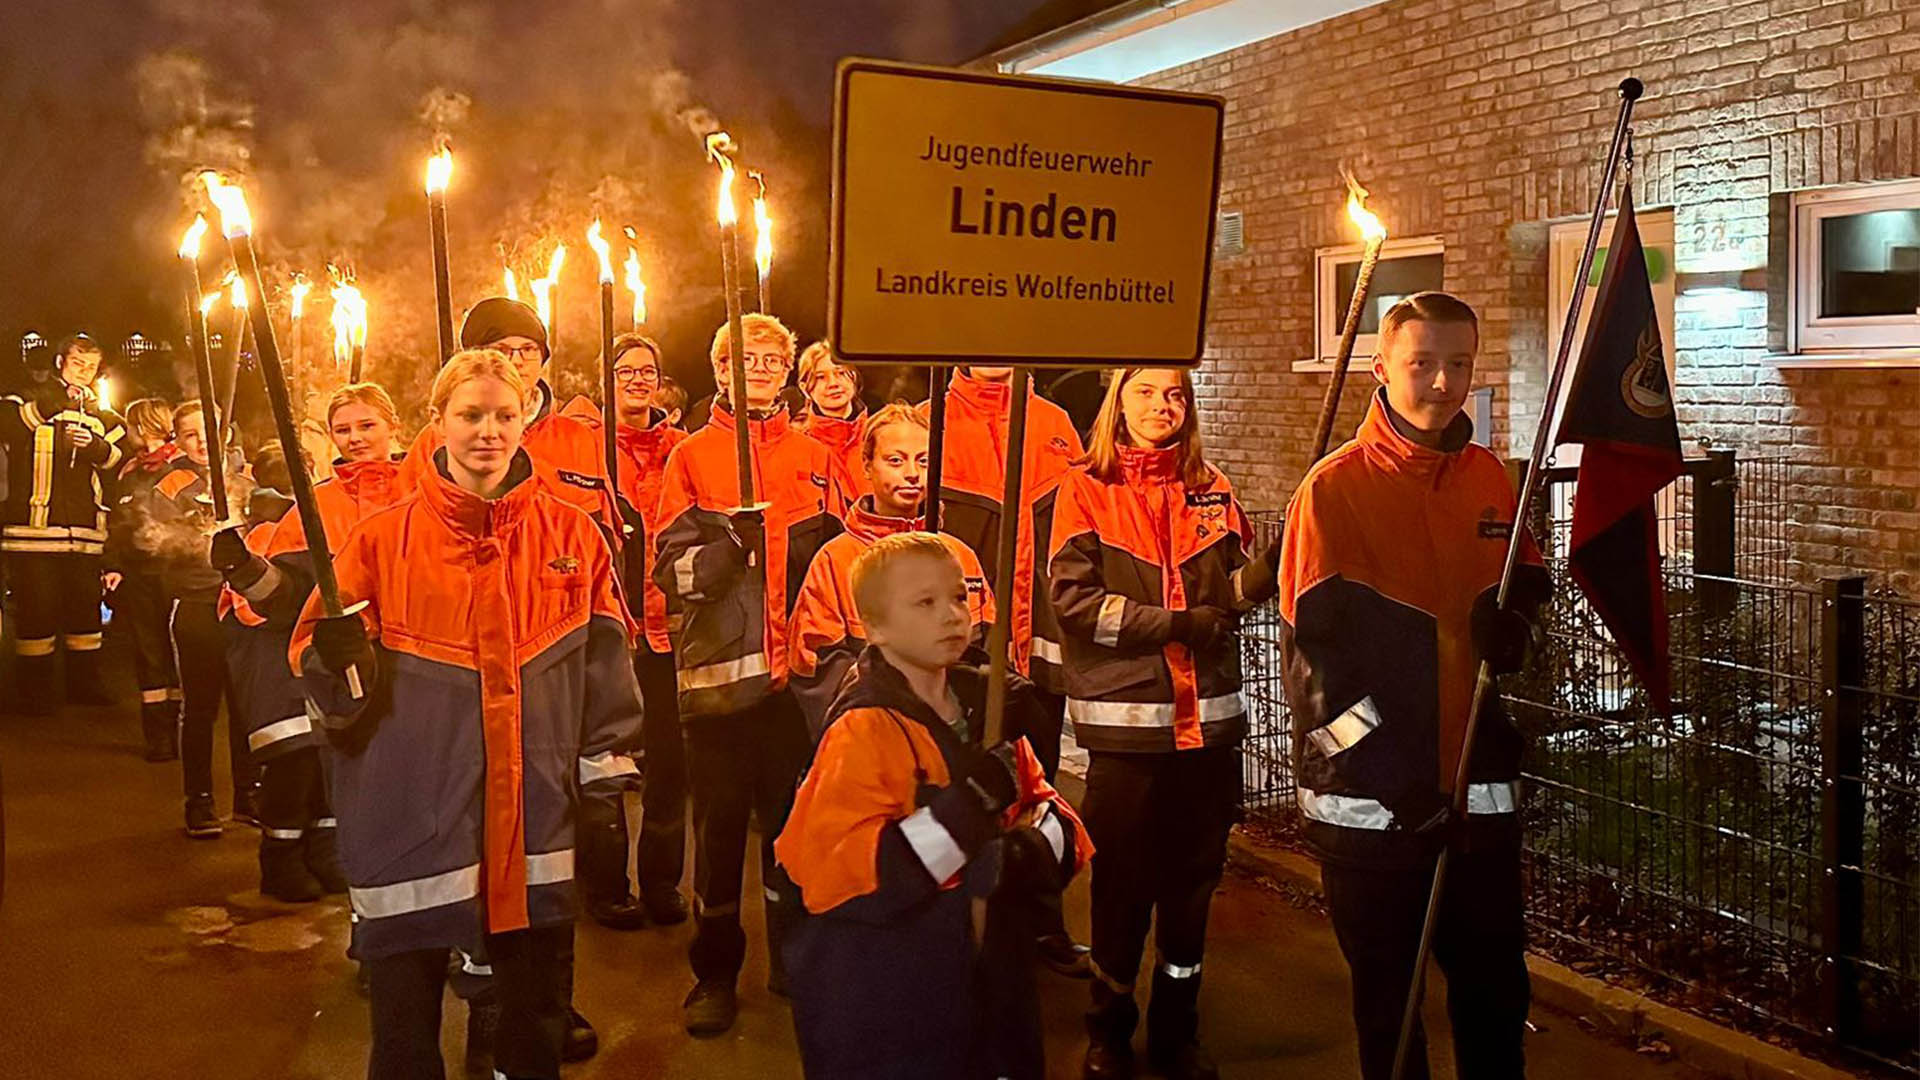 Jugendliche der Jugendfeuerwehr Linden führen mit Fackeln in den Händen und in Uniform den Laternenumzug an. Ein Junge trägt ein Schild "Jugendfeuerwehr Linden, Landkreis Wolfenbüttel", ein anderer eine Fahne.